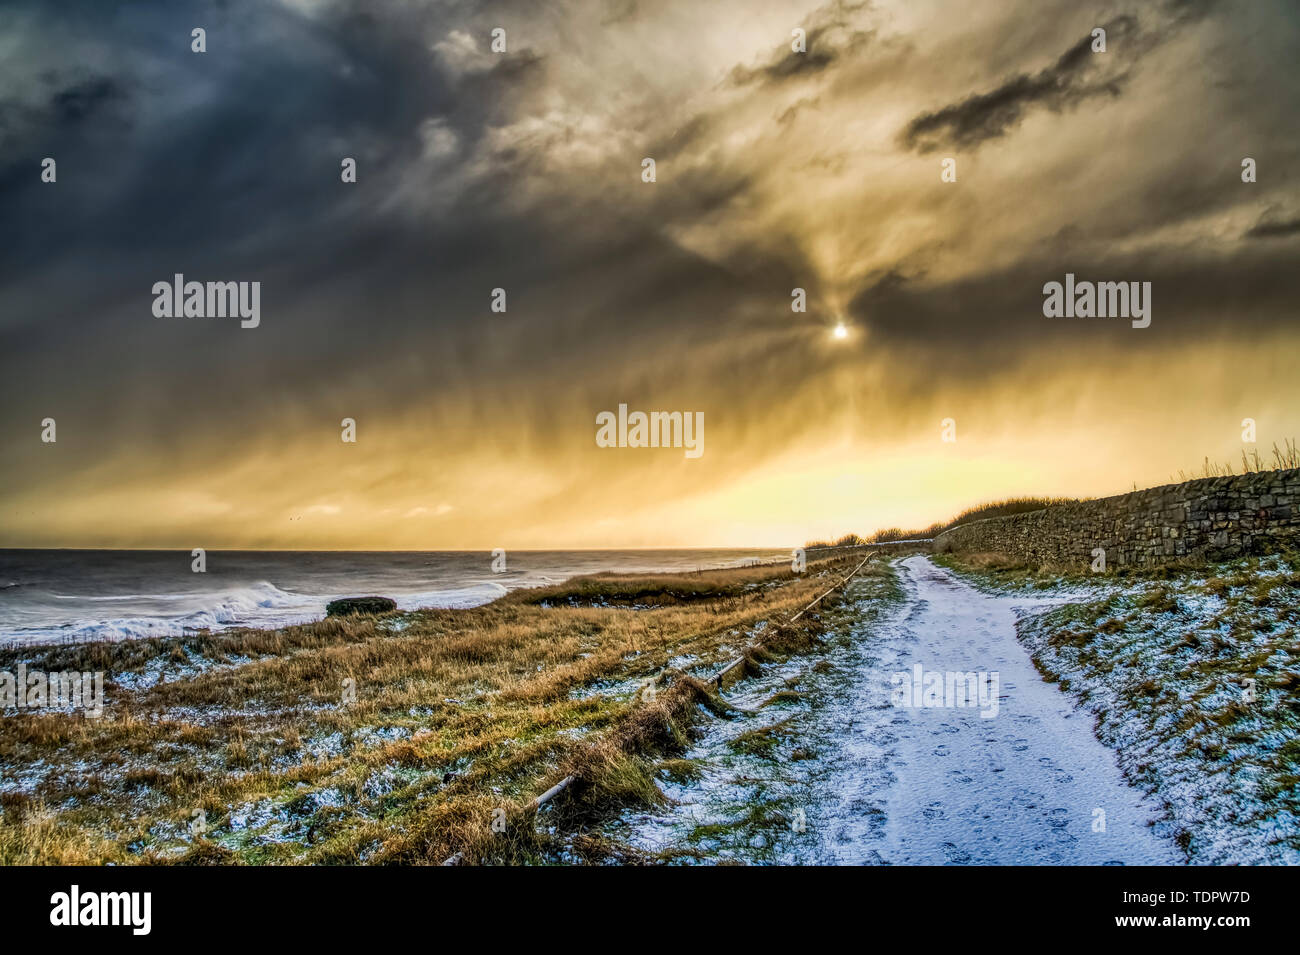 Coperte di neve il percorso lungo la costa dorata con la luce del sole illuminando le nubi; South Shields, Tyne and Wear, Inghilterra Foto Stock